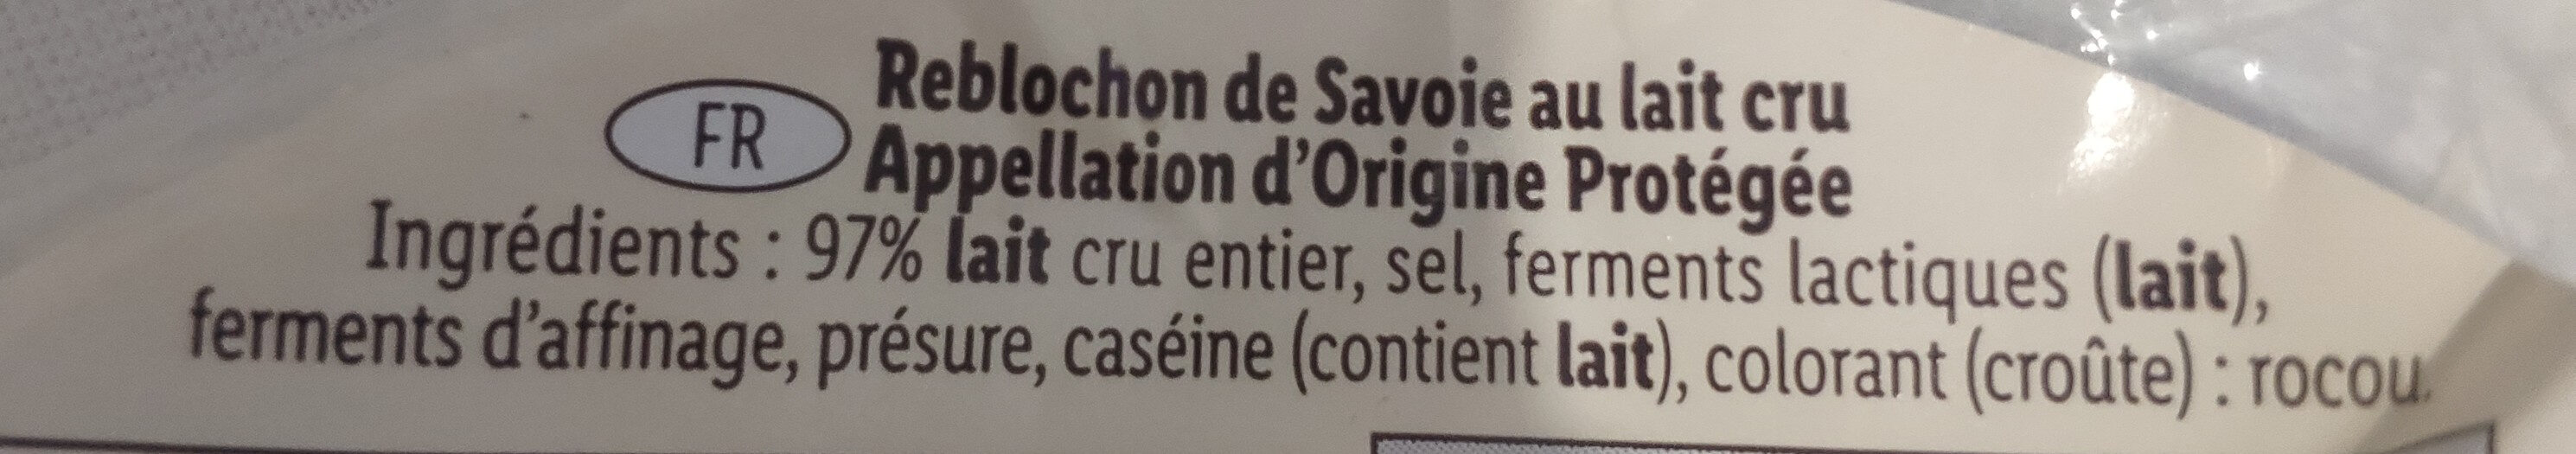 Reblochon de Savoie au lait cru - Ingredients - fr